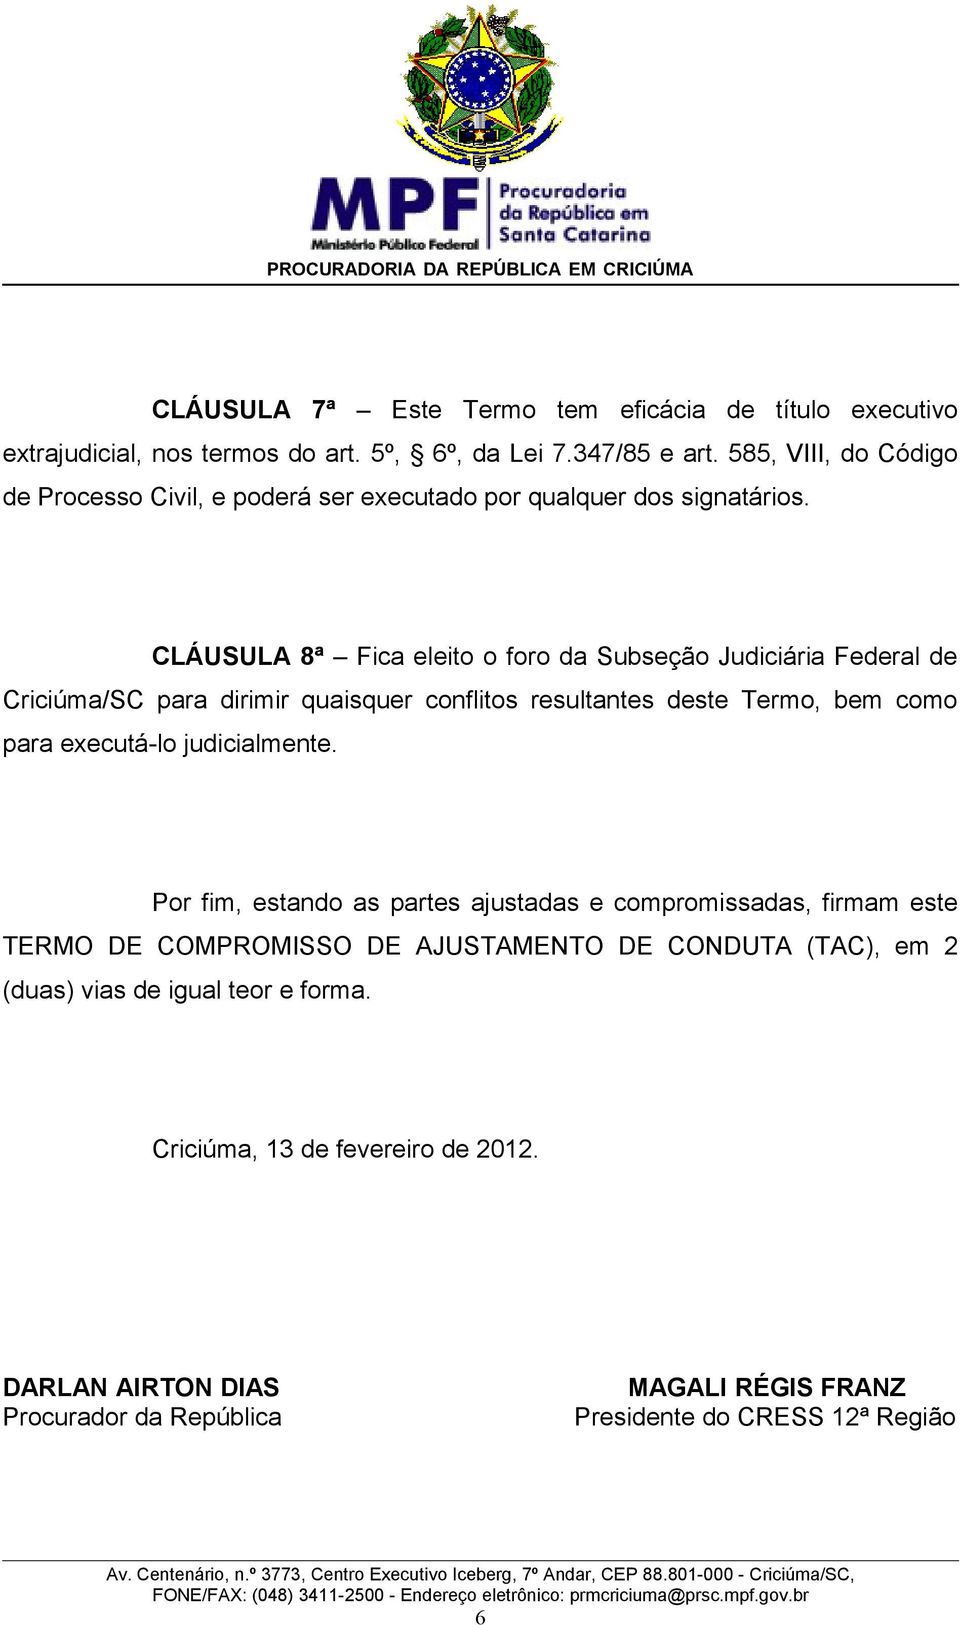 CLÁUSULA 8ª Fica eleito o foro da Subseção Judiciária Federal de Criciúma/SC para dirimir quaisquer conflitos resultantes deste Termo, bem como para executá-lo